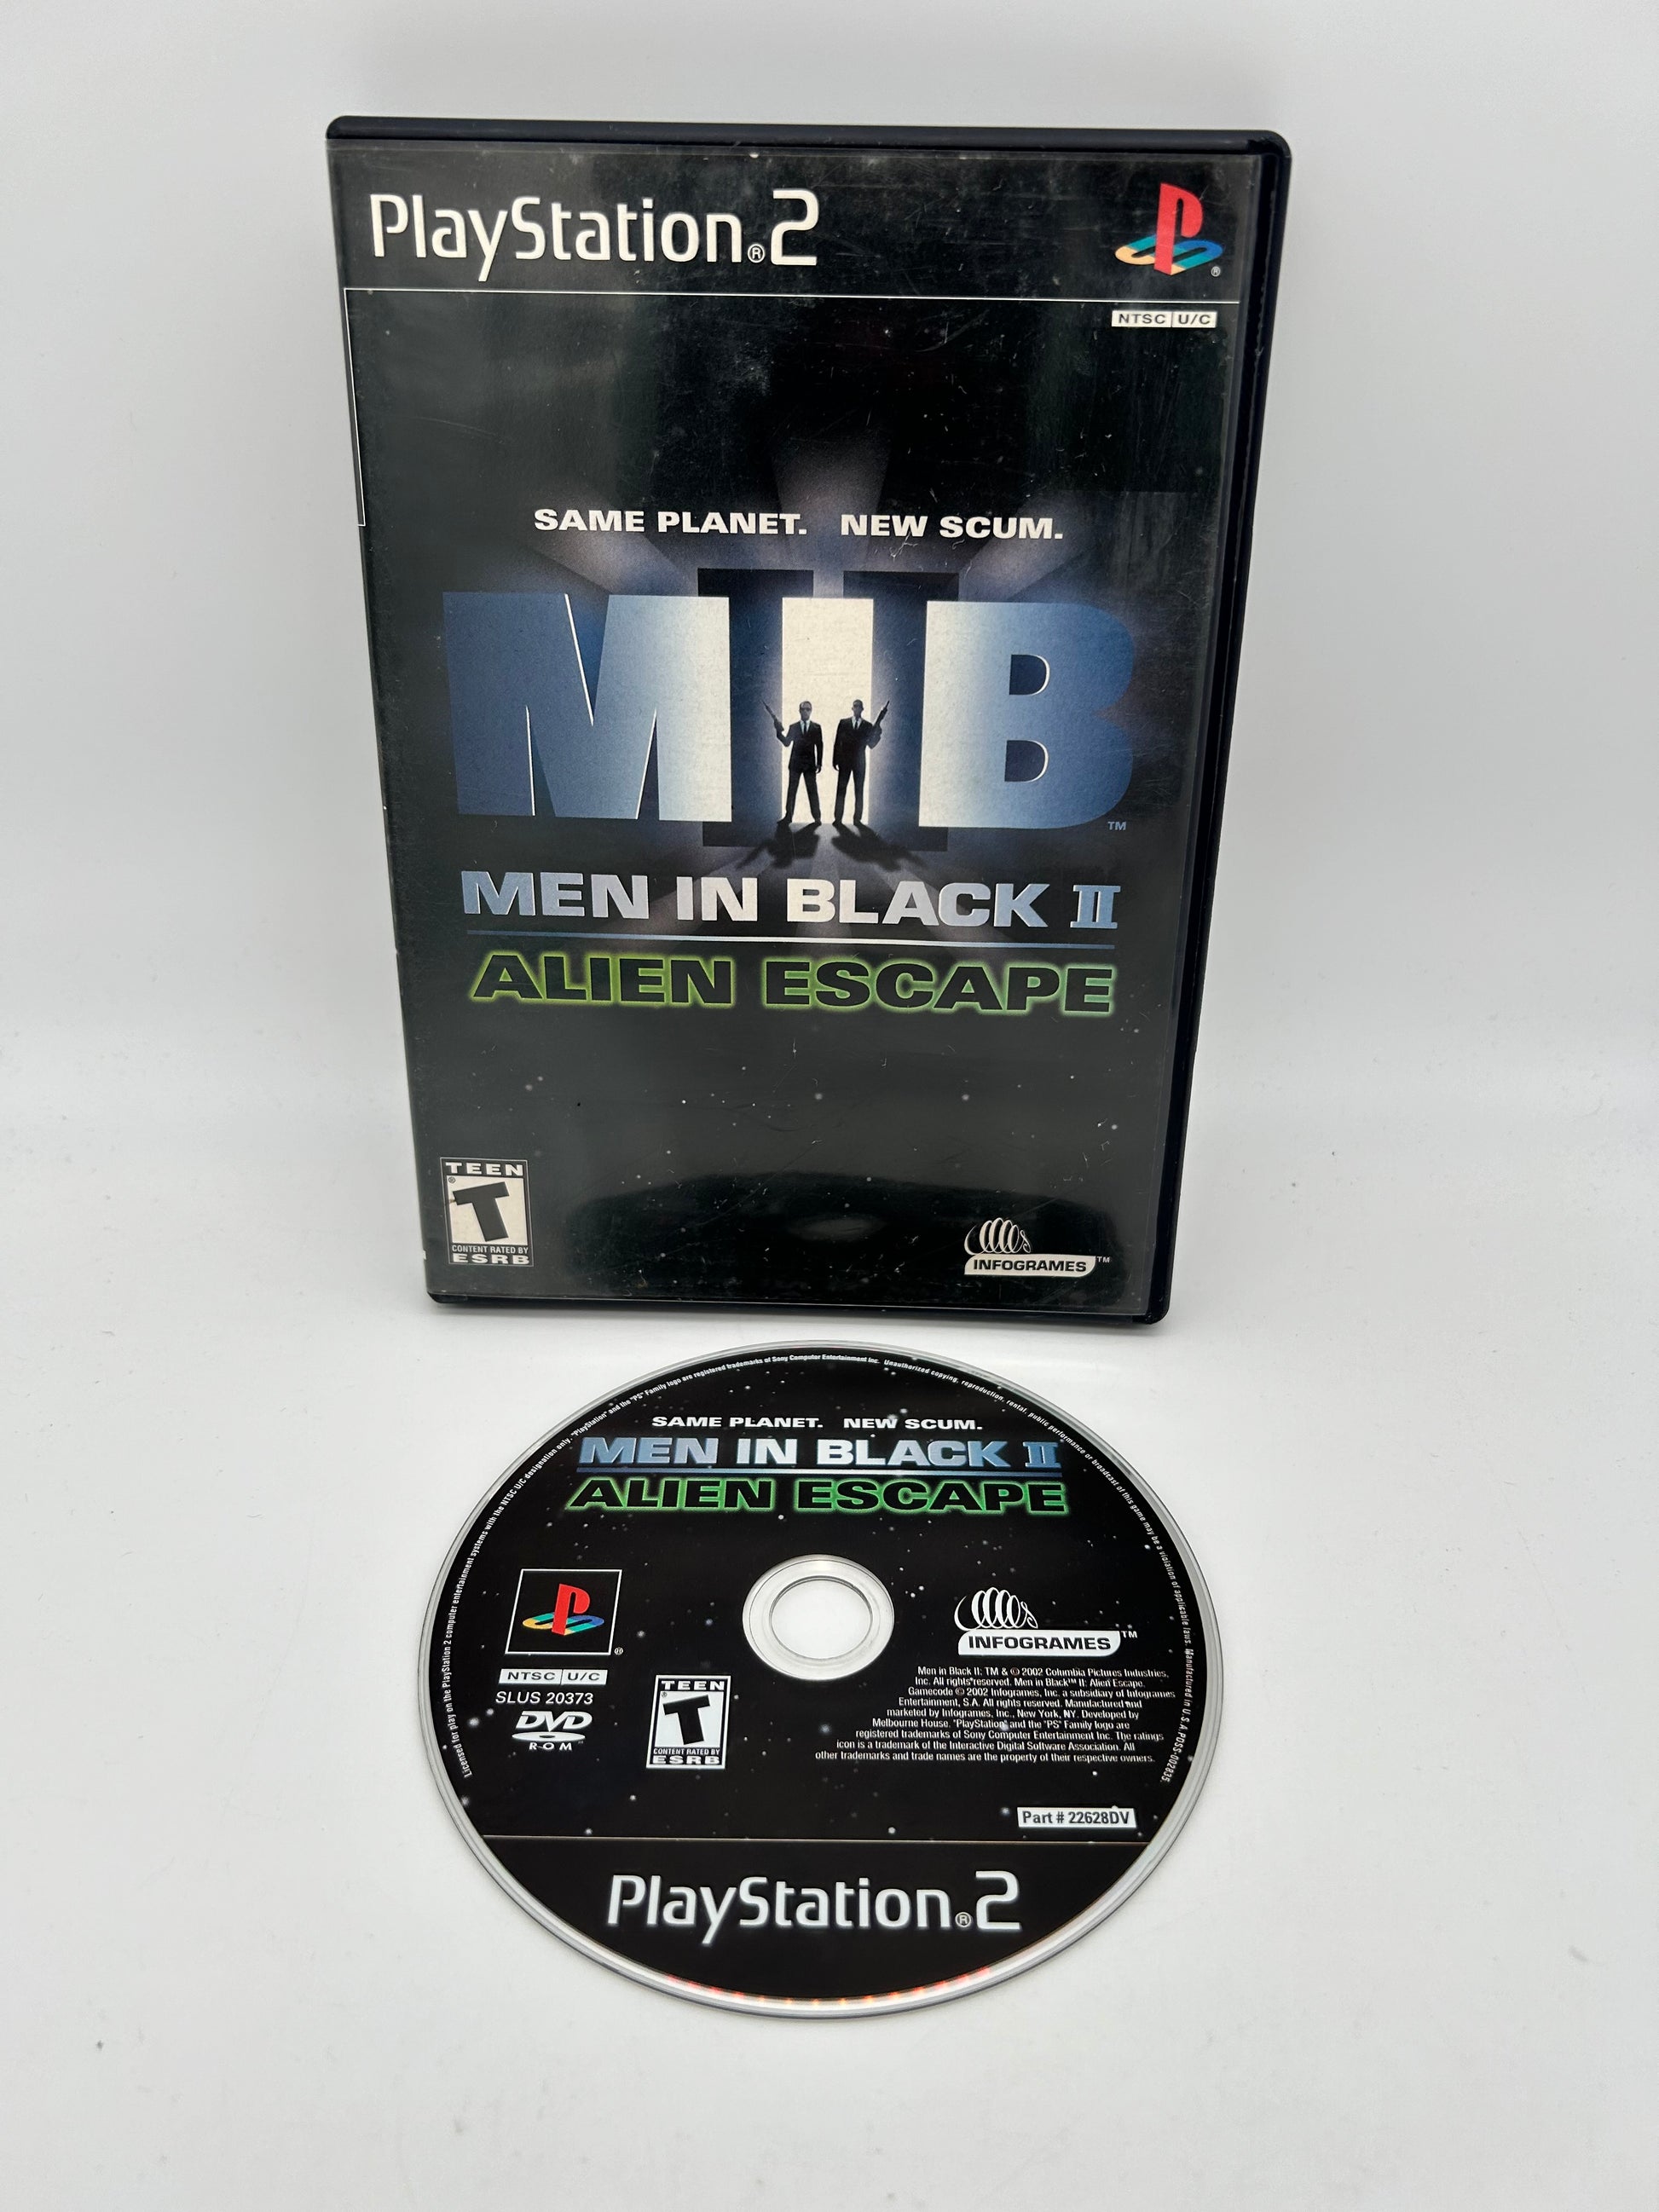 PiXEL-RETRO.COM : SONY PLAYSTATION 2 (PS2) COMPLET CIB BOX MANUAL GAME NTSC MEN IN BLACK II ALIEN ESCAPE MIB